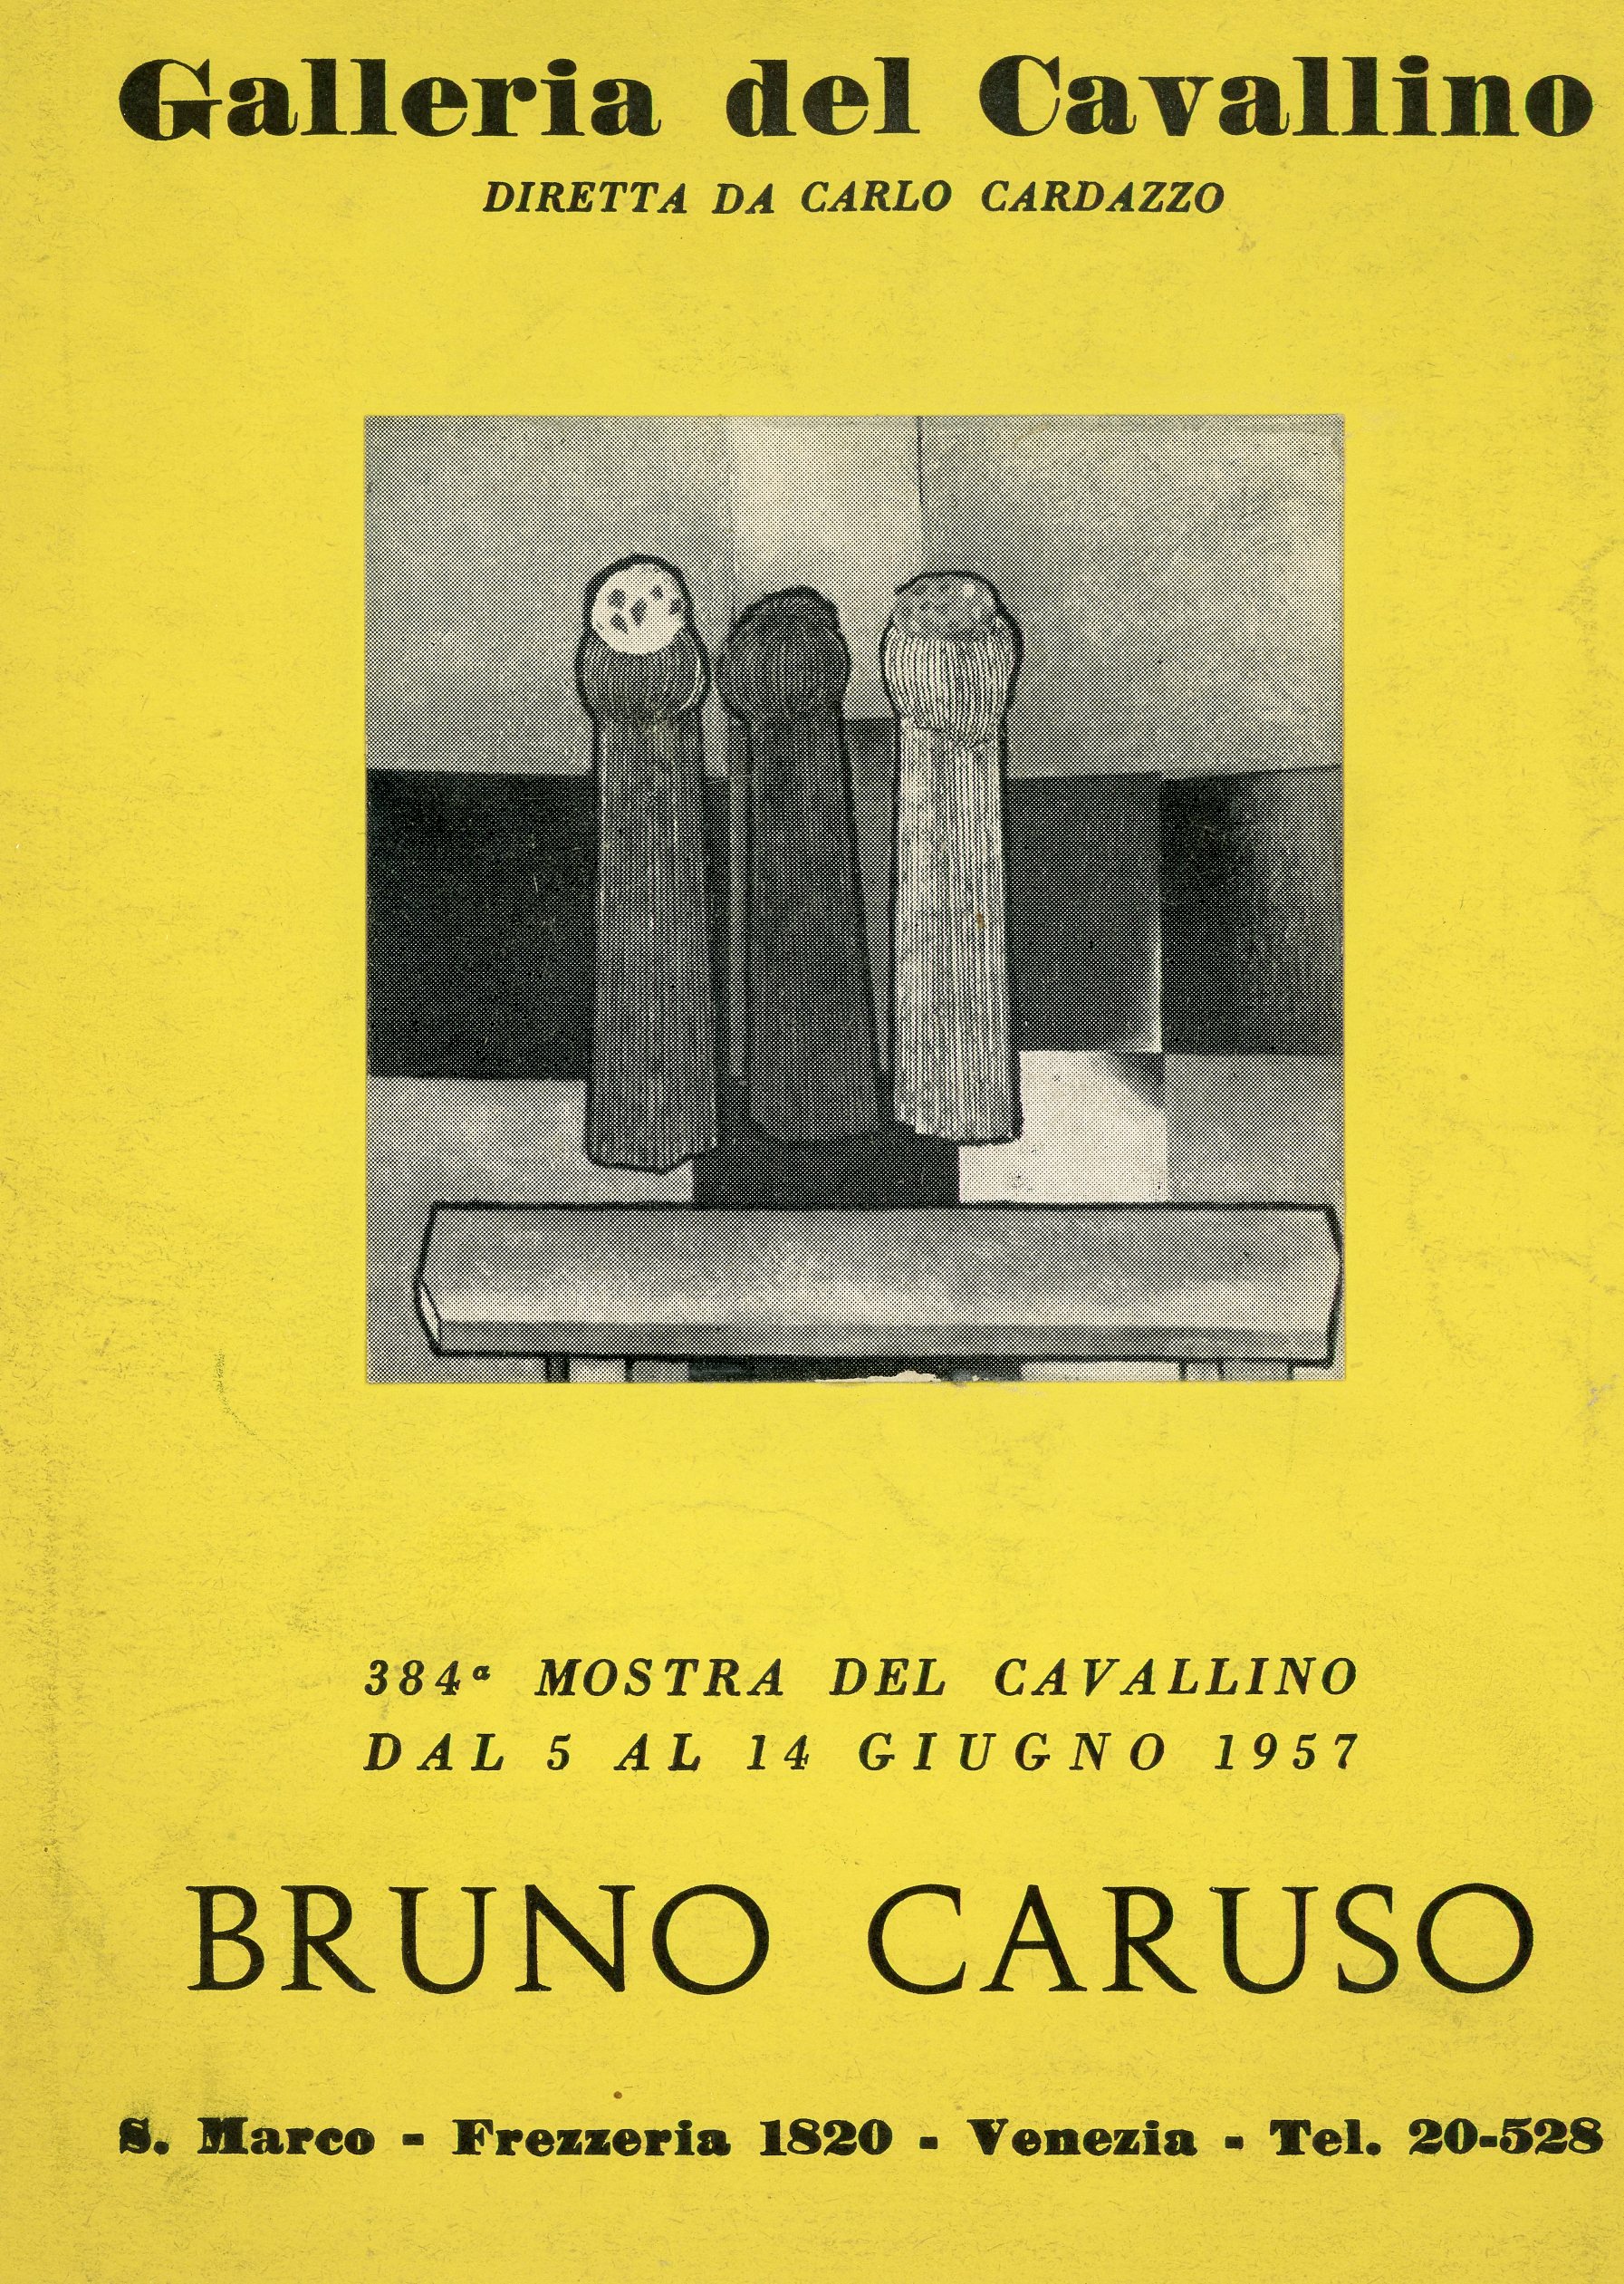 1957-06 Galleria del Cavallino - Bruno Caruso_01.jpg